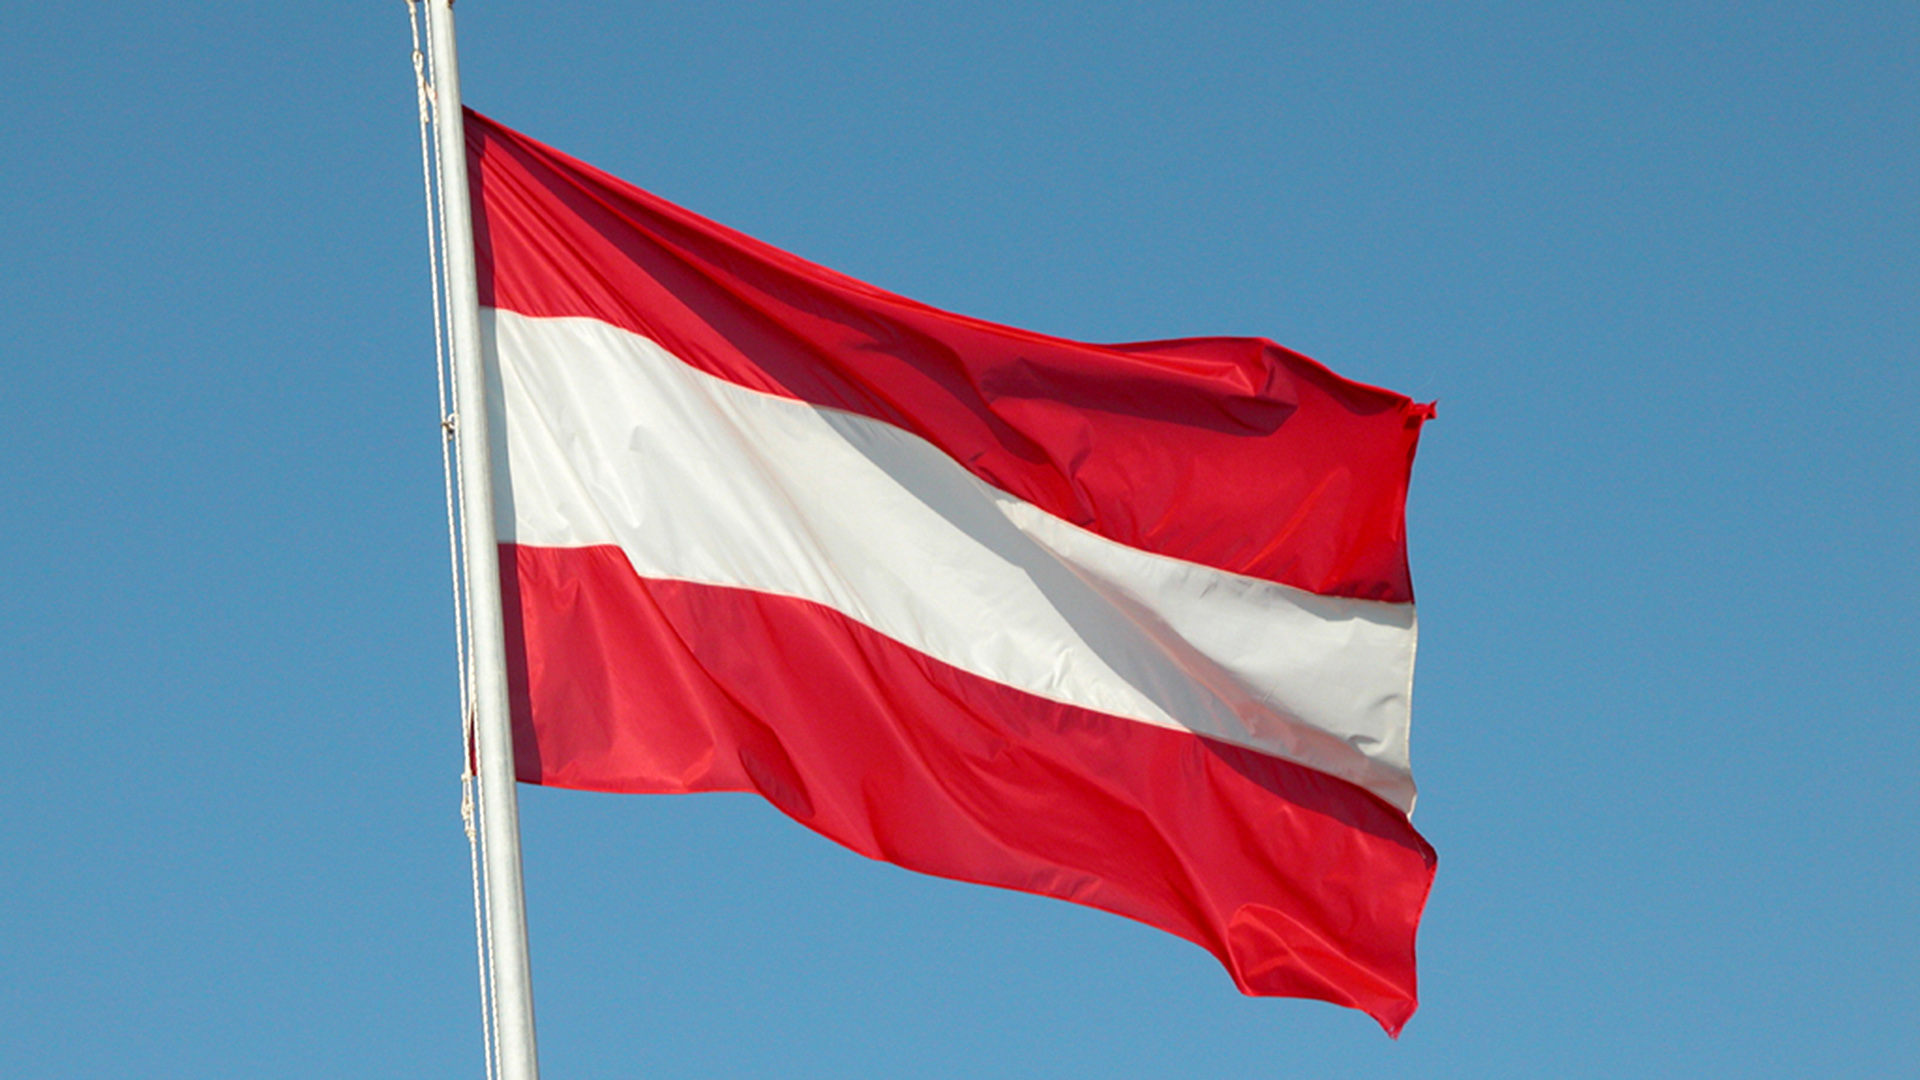 Flagge Österreich | picture alliance